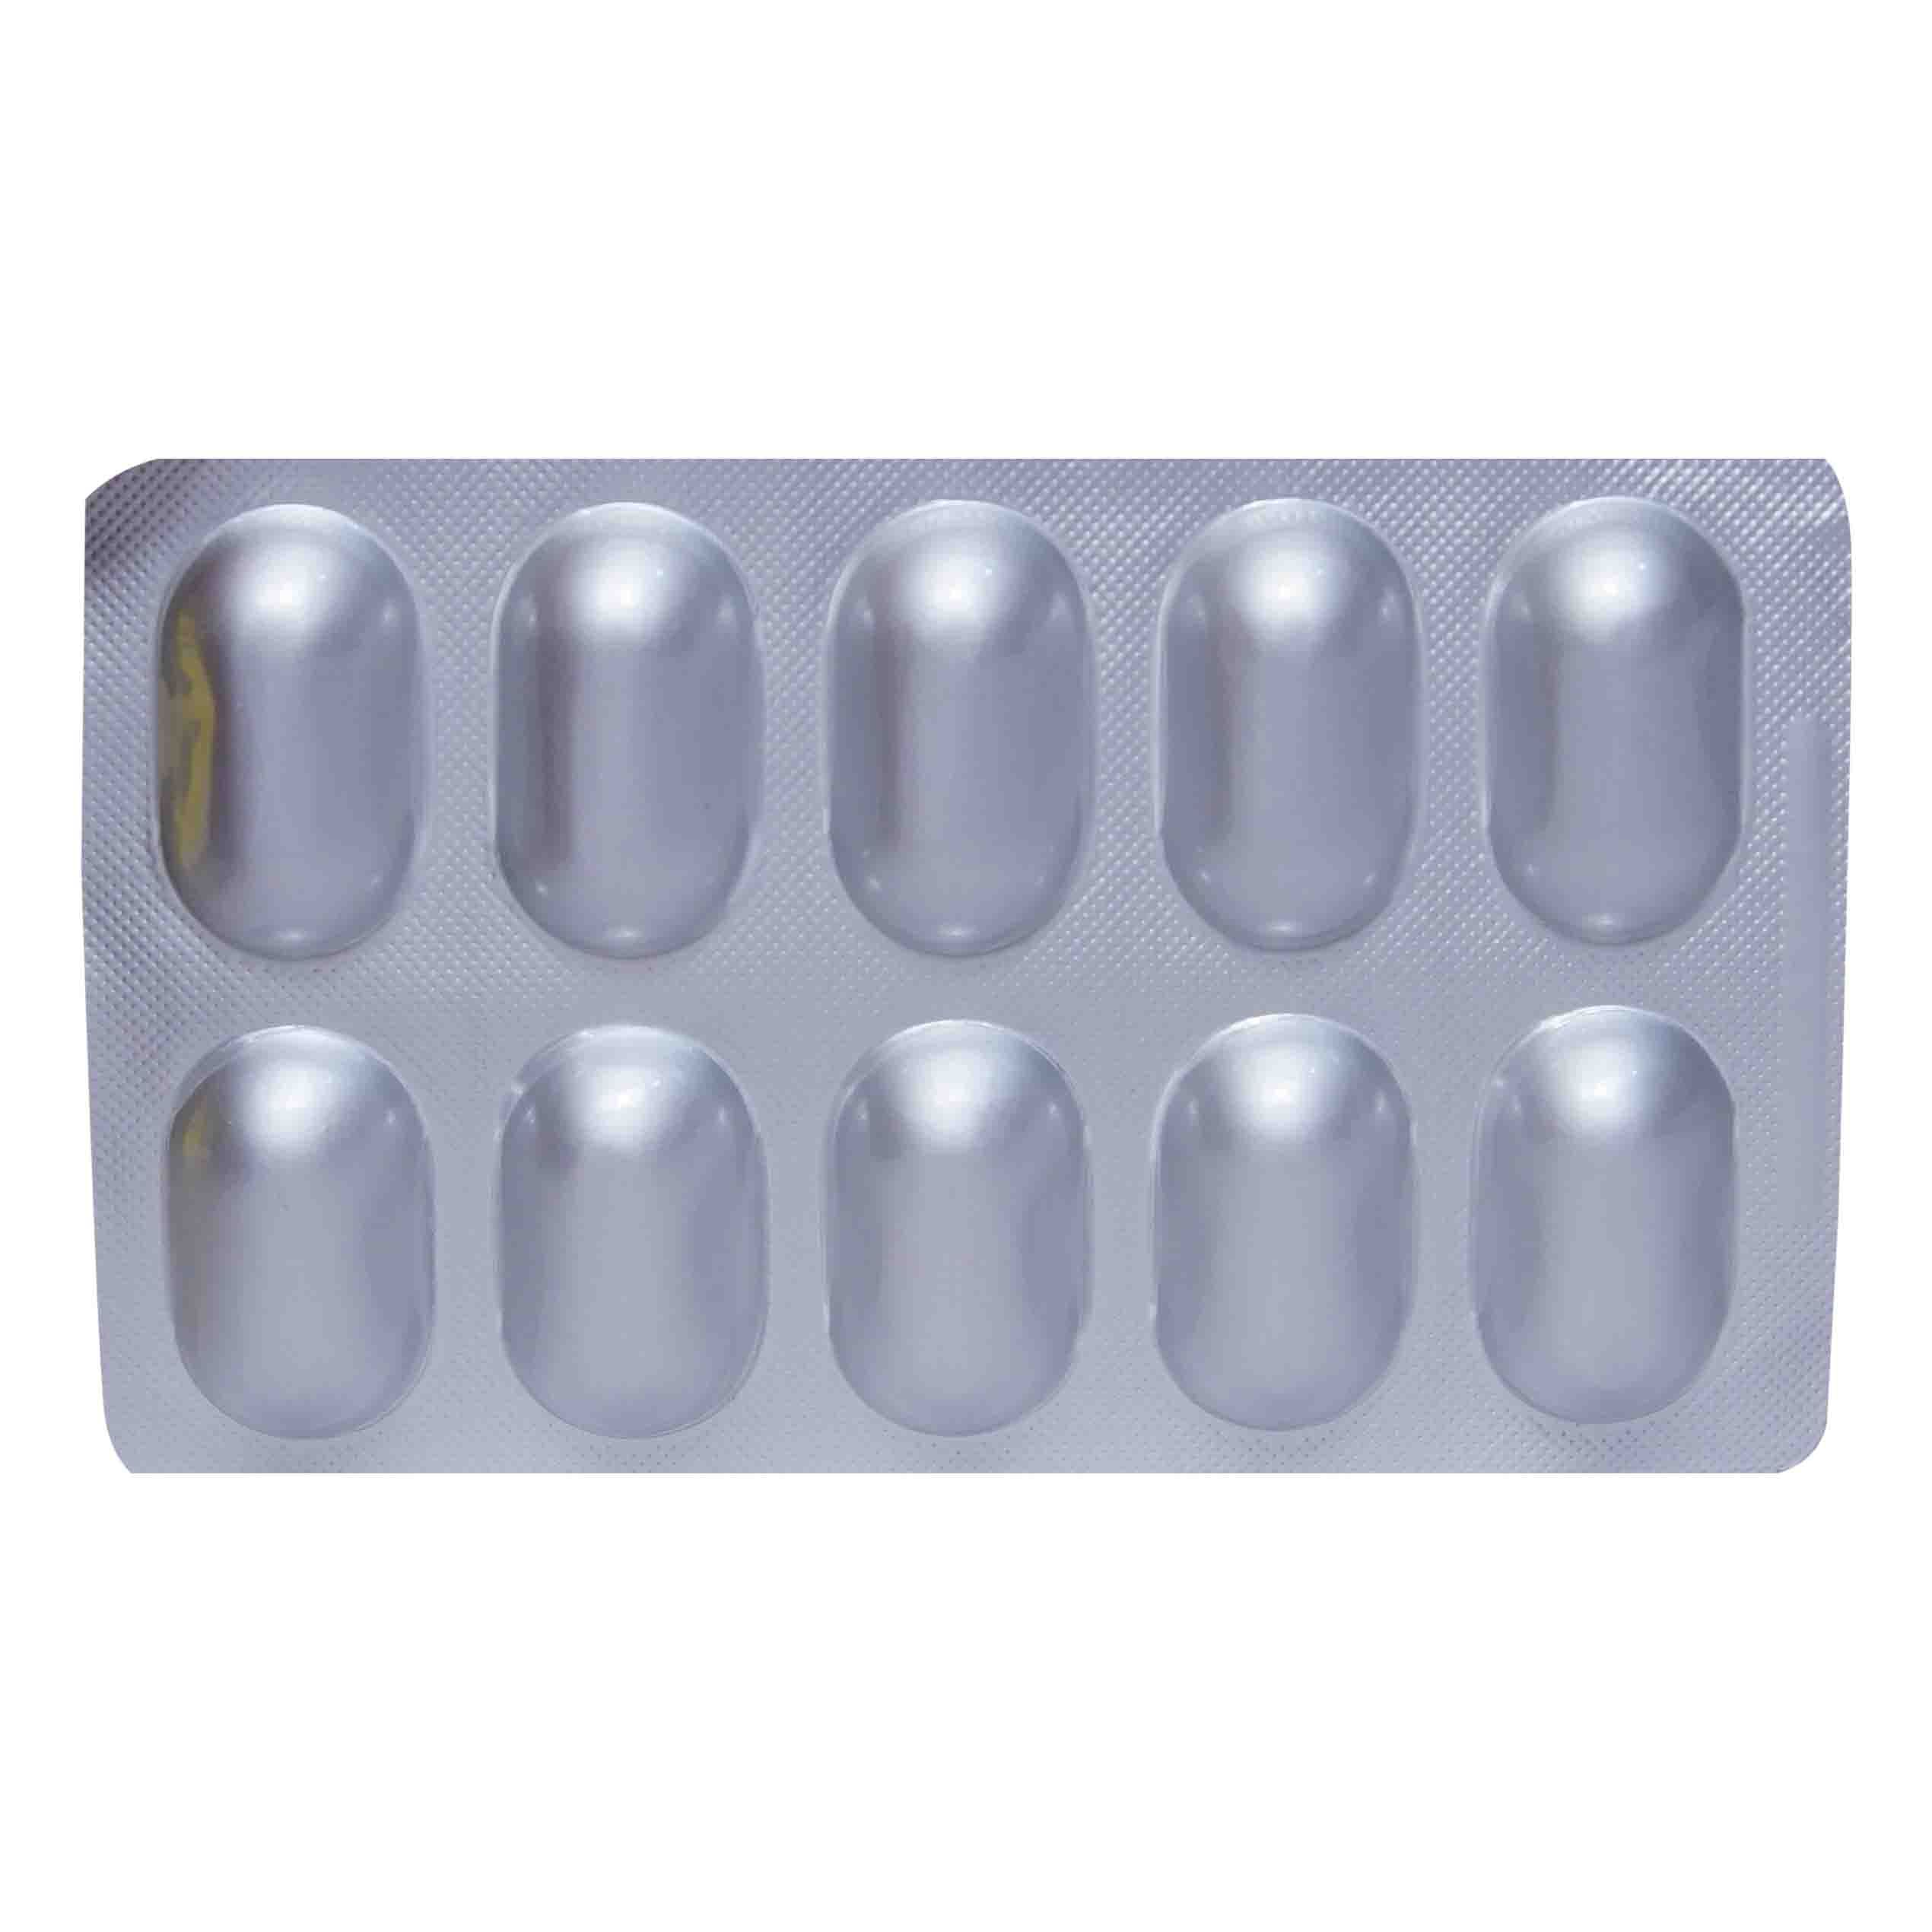 Artilage Tablet 10's, Pack of 10 TABLETS